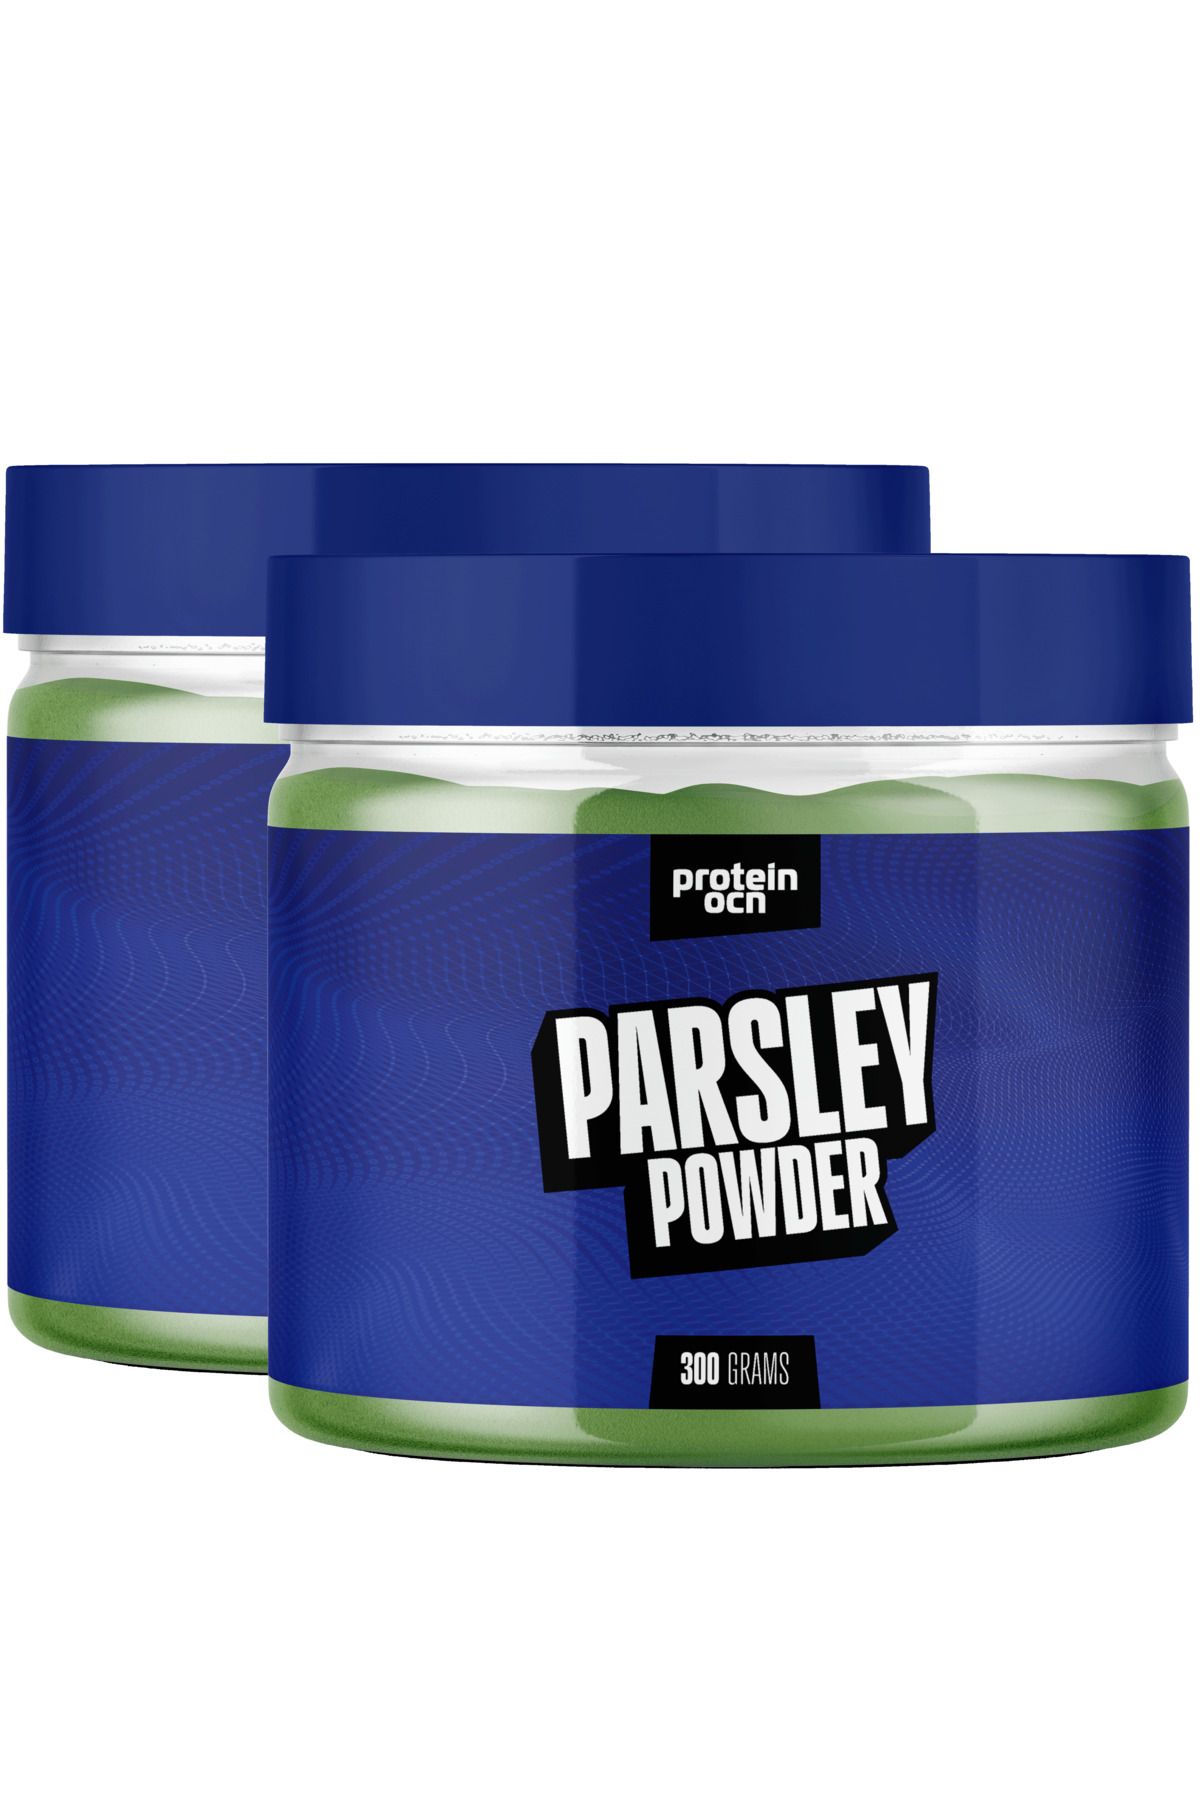 Proteinocean PARSLEY POWDER - 300g x 2 Adet - 60 servis